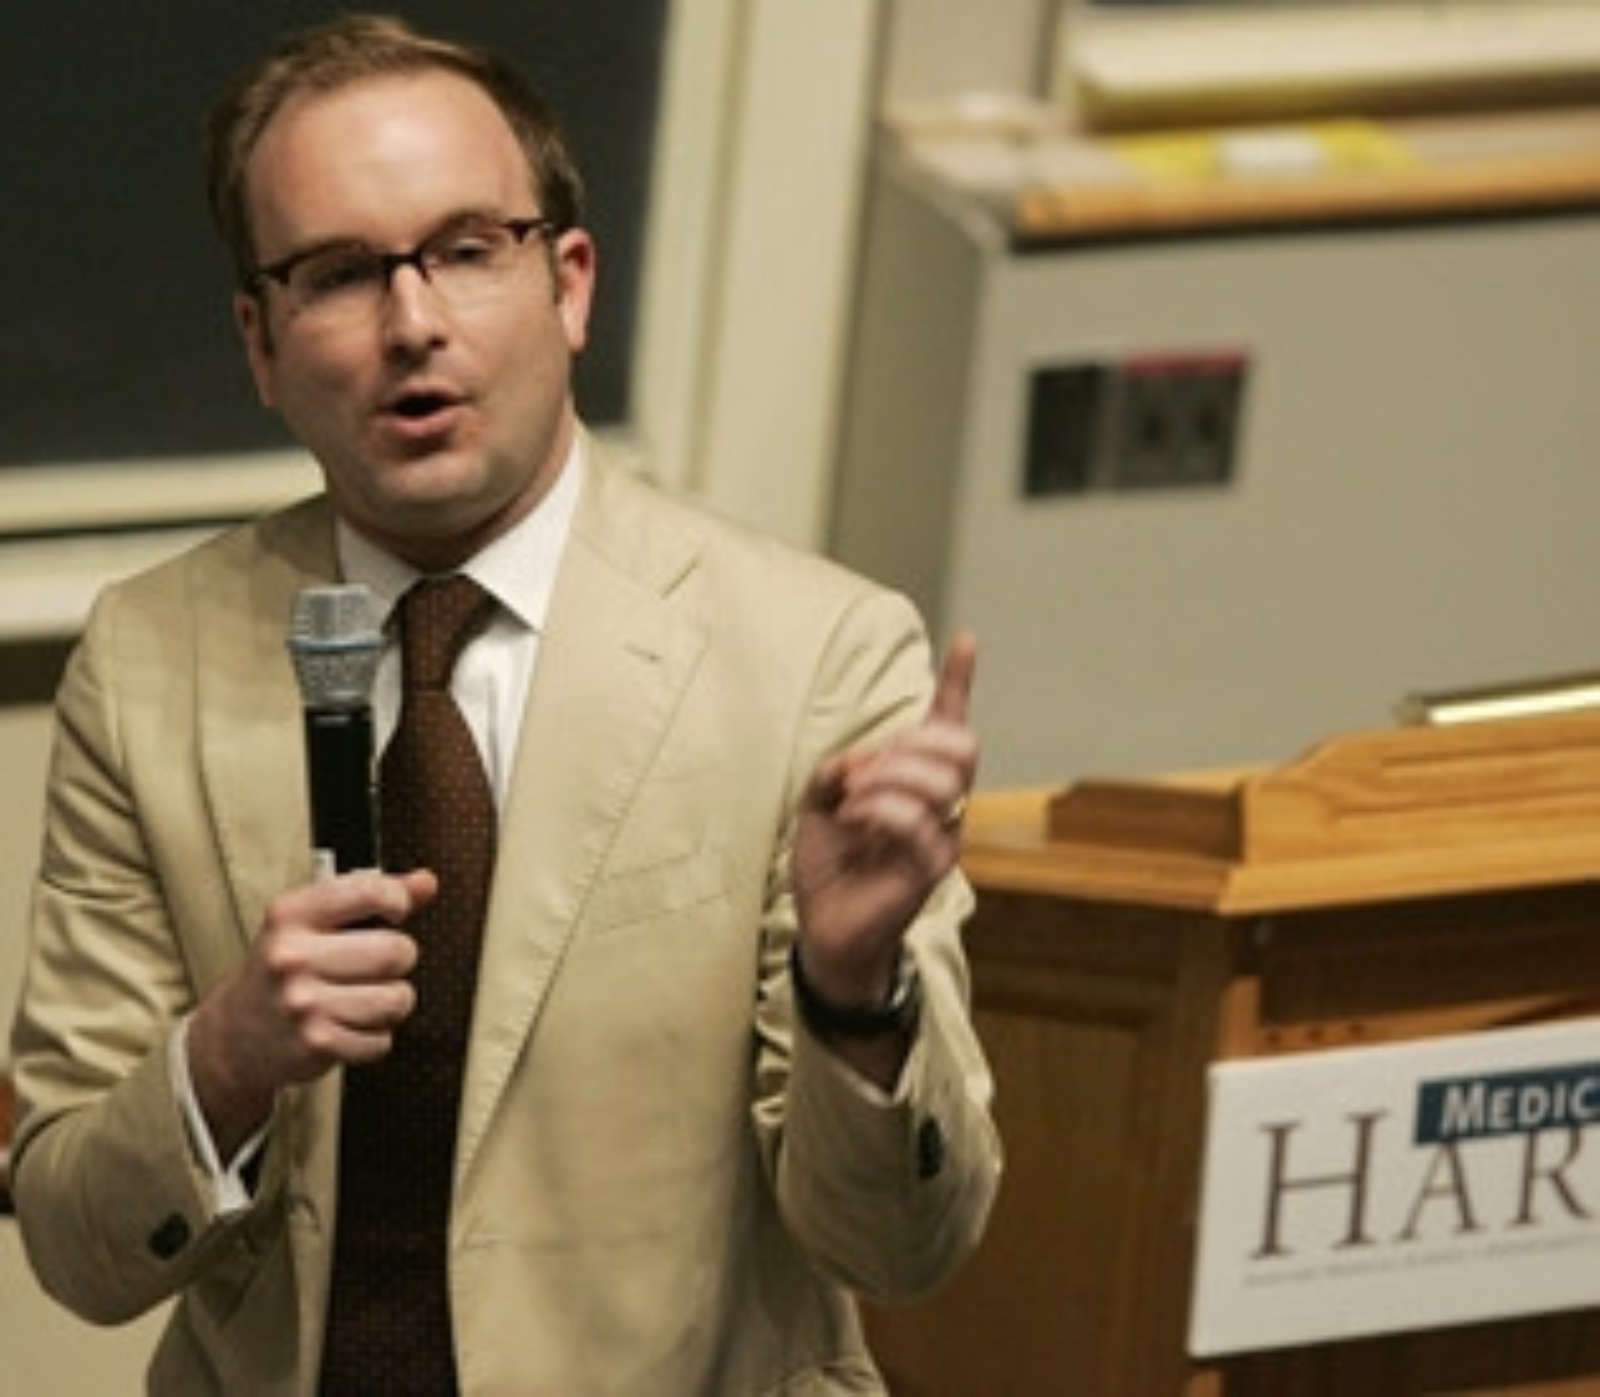 Bryan Doerries End Of Life Harvard Medical School